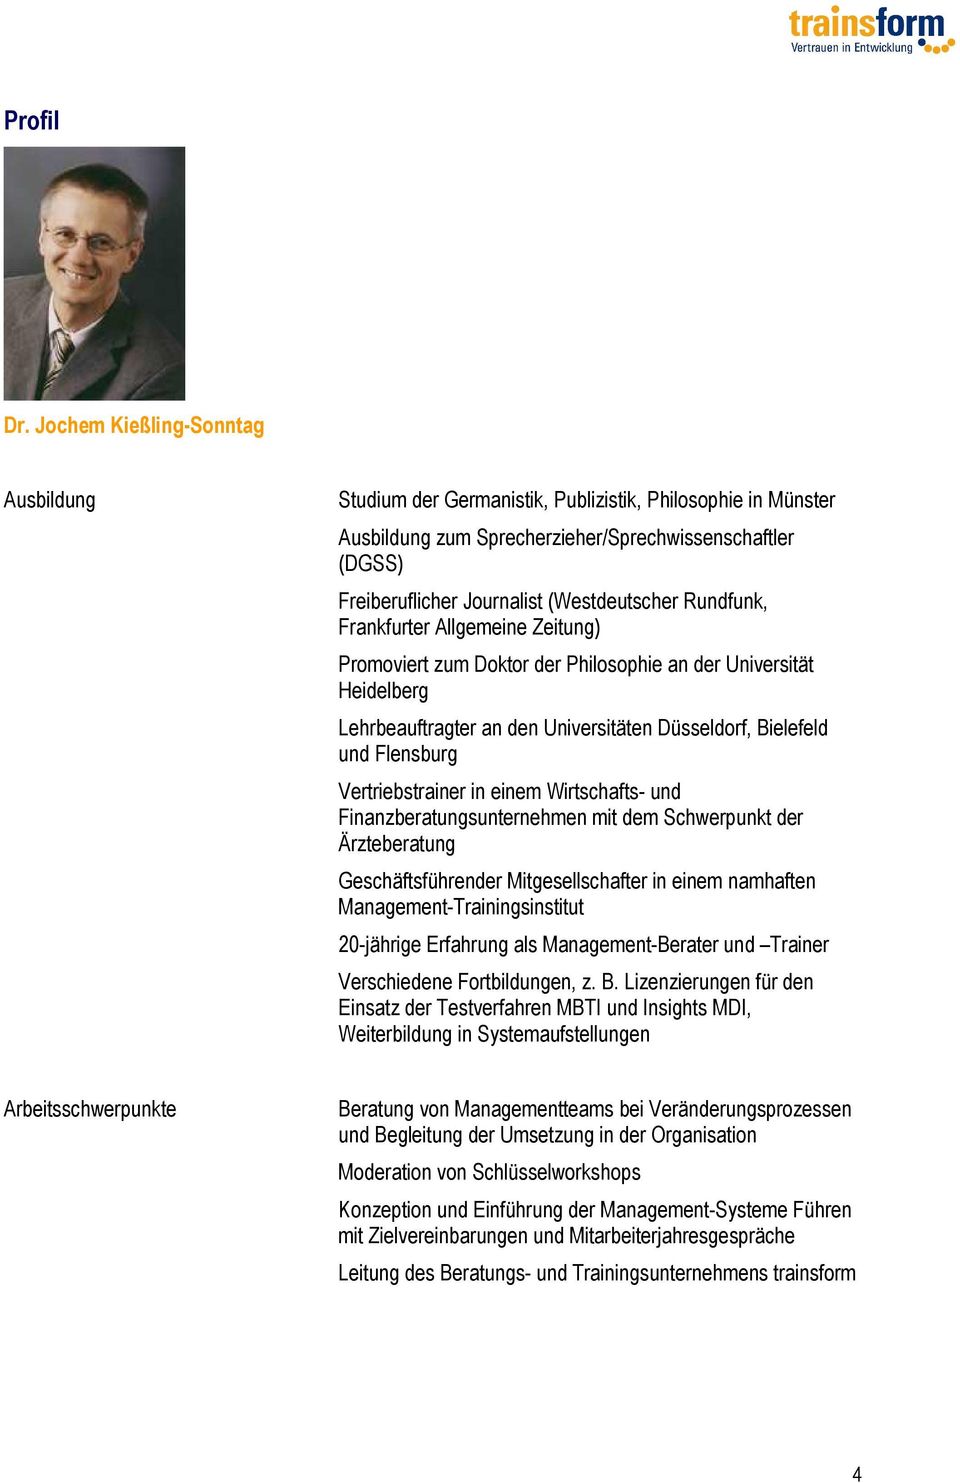 Rundfunk, Frankfurter Allgemeine Zeitung) Promoviert zum Doktor der Philosophie an der Universität Heidelberg Lehrbeauftragter an den Universitäten Düsseldorf, Bielefeld und Flensburg